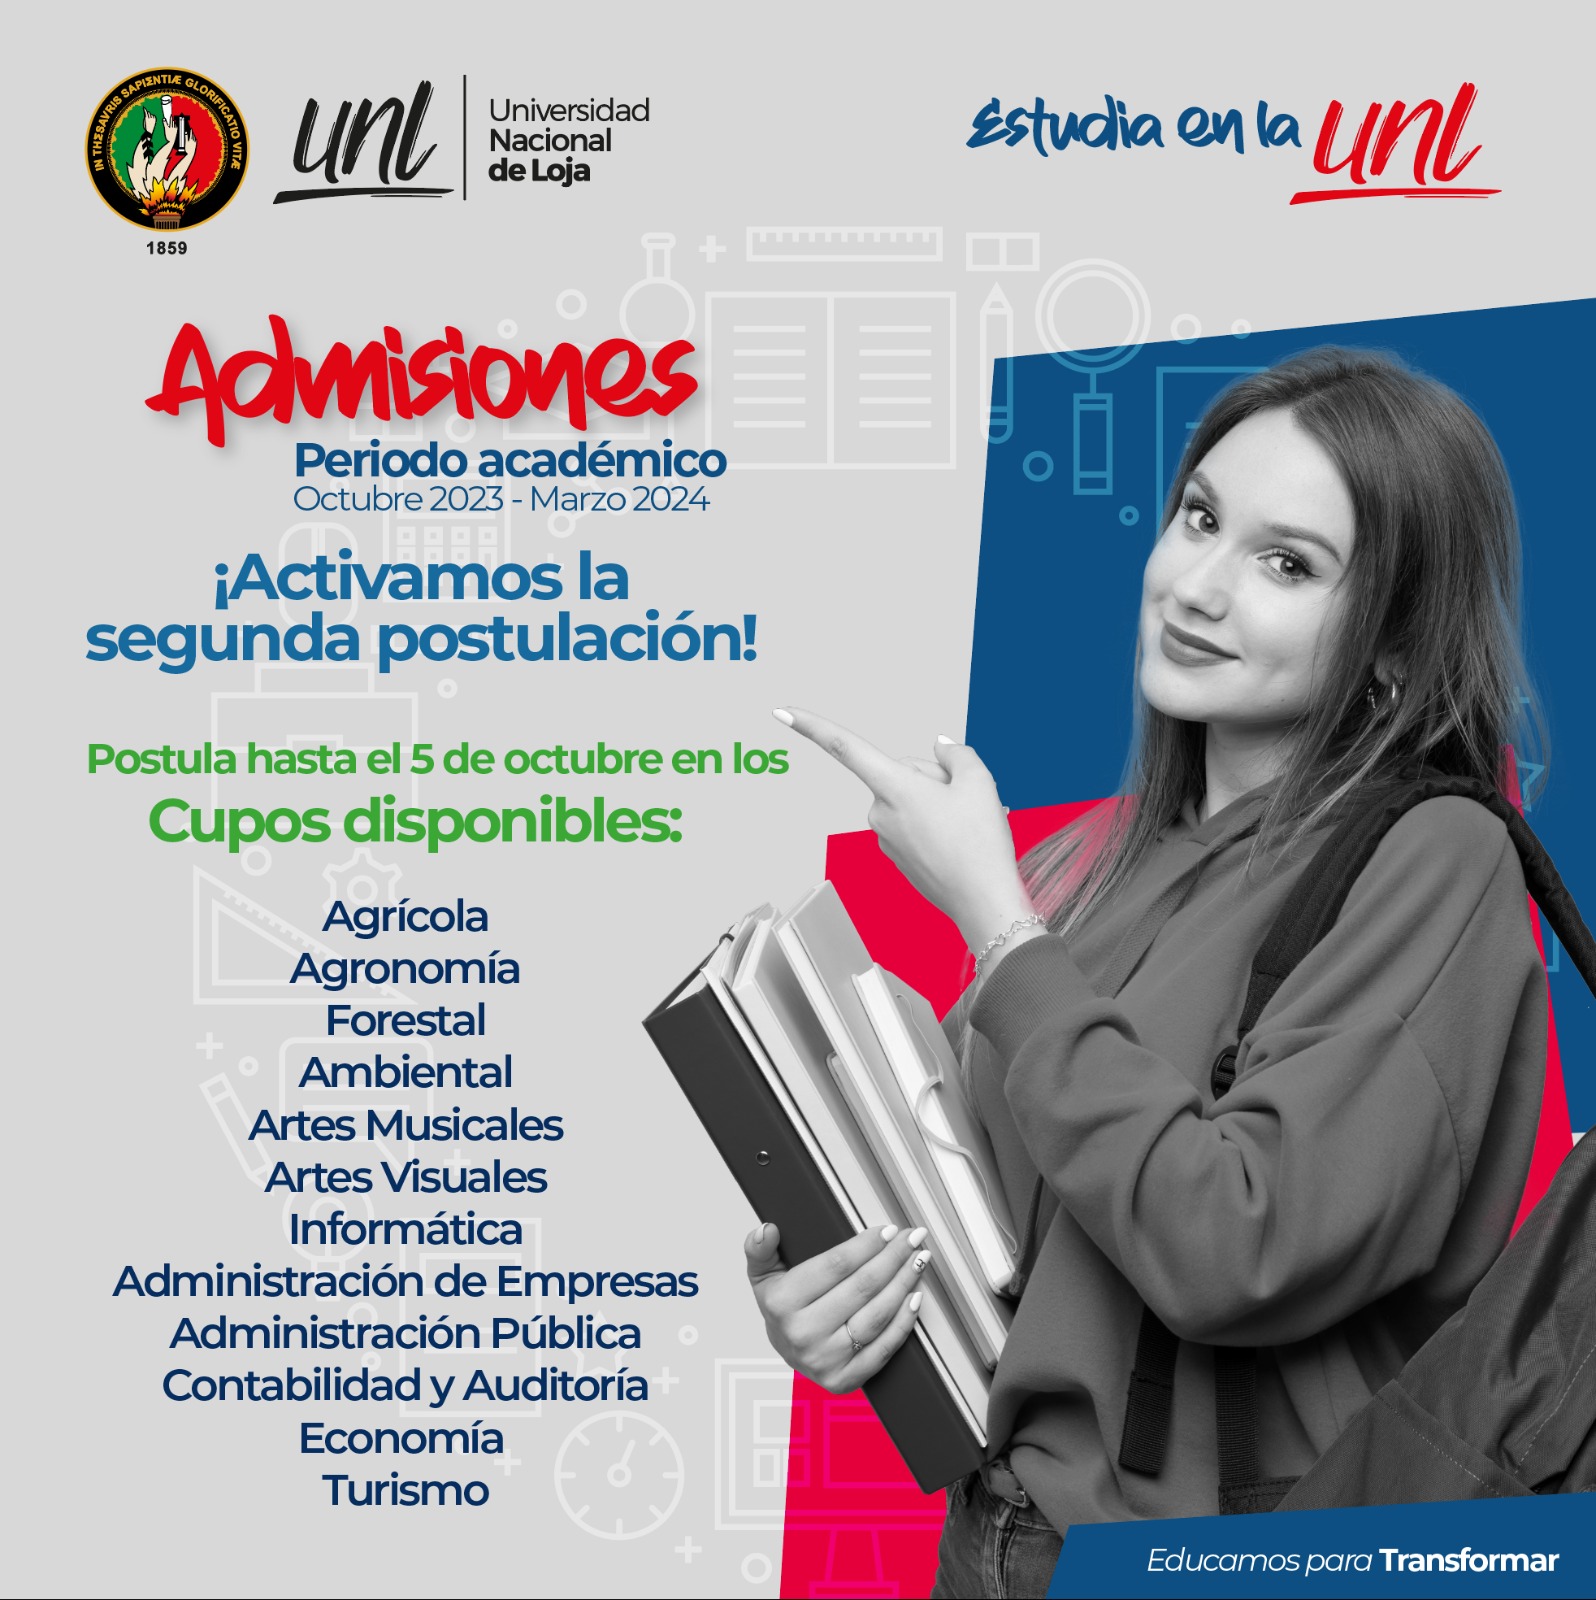 https://admisiones.unl.edu.ec/autentificacion/login